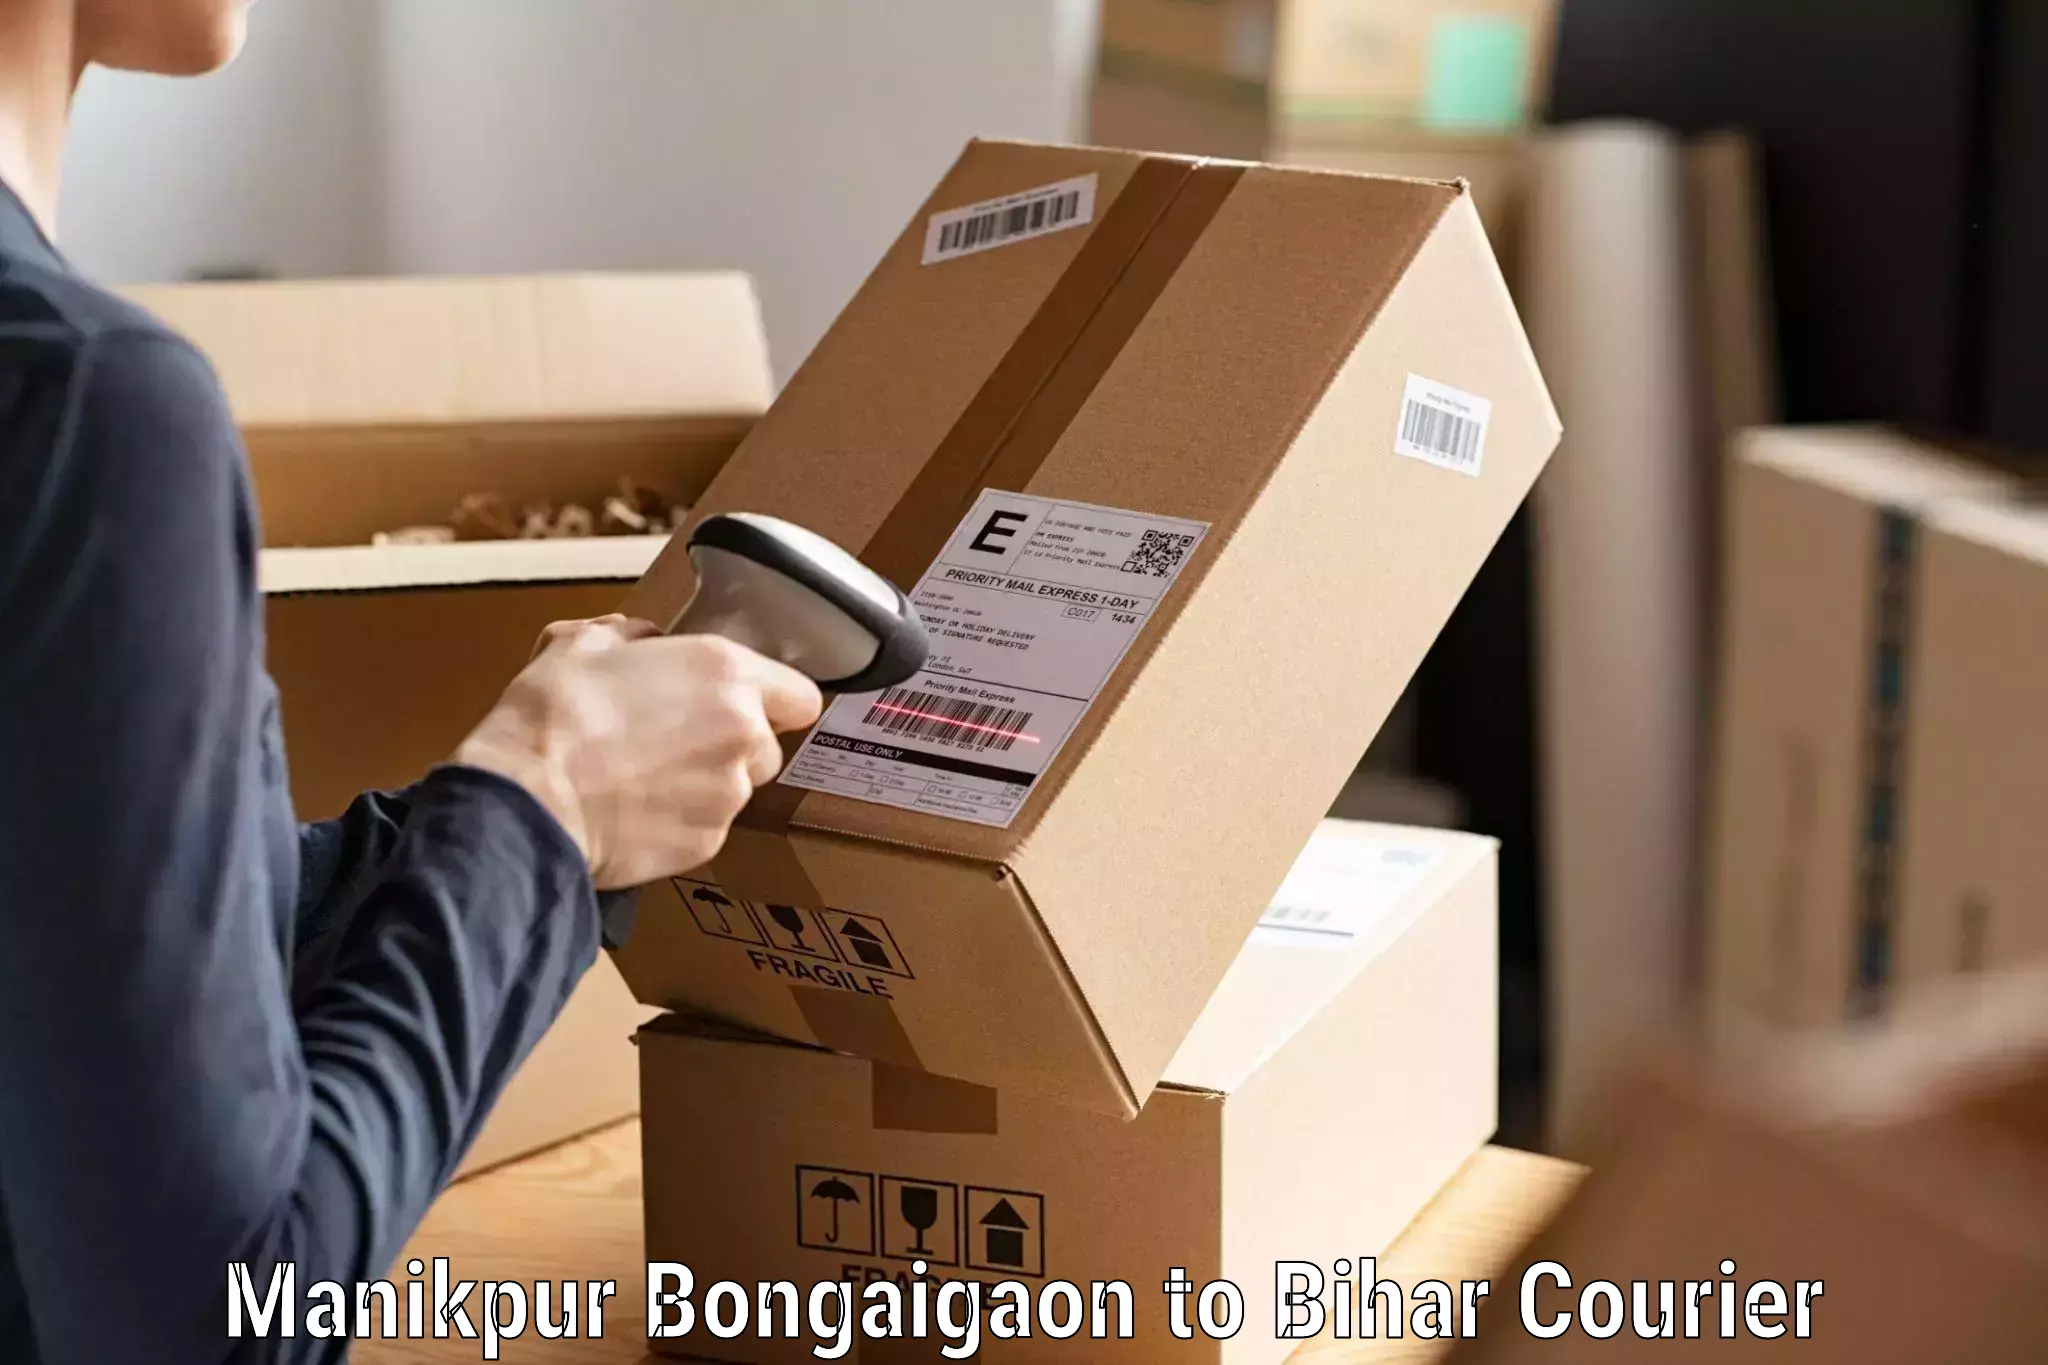 Fast shipping solutions Manikpur Bongaigaon to Narkatiaganj